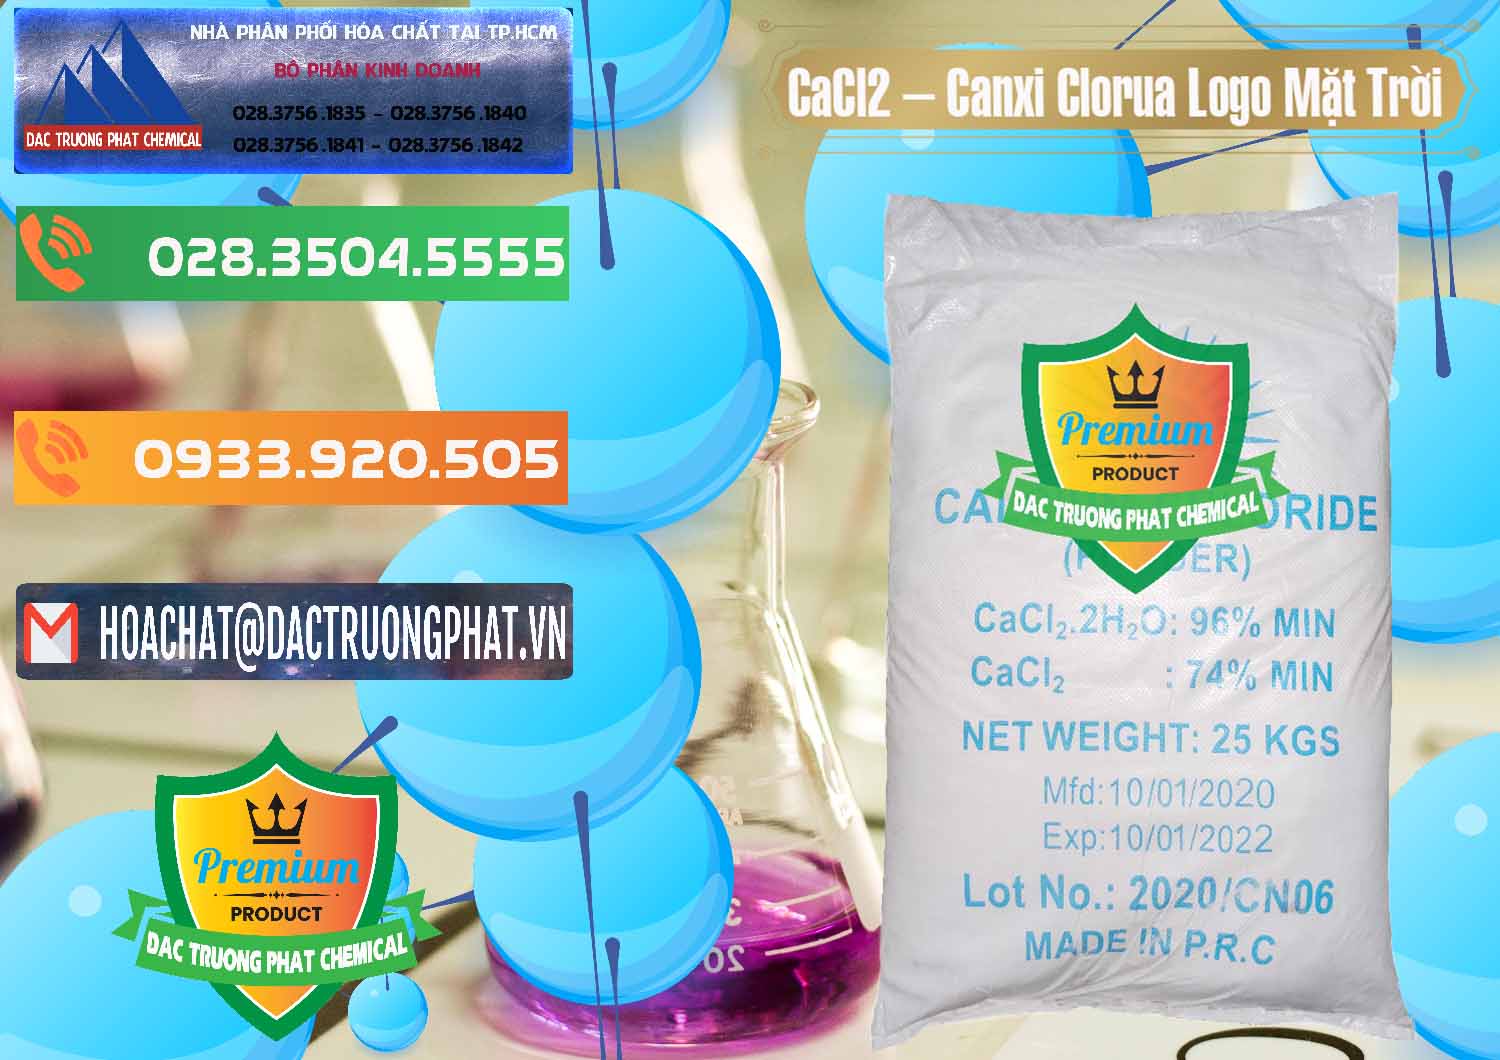 Nơi chuyên bán - cung cấp CaCl2 – Canxi Clorua 96% Logo Mặt Trời Trung Quốc China - 0041 - Công ty cung cấp & phân phối hóa chất tại TP.HCM - hoachatxulynuoc.com.vn